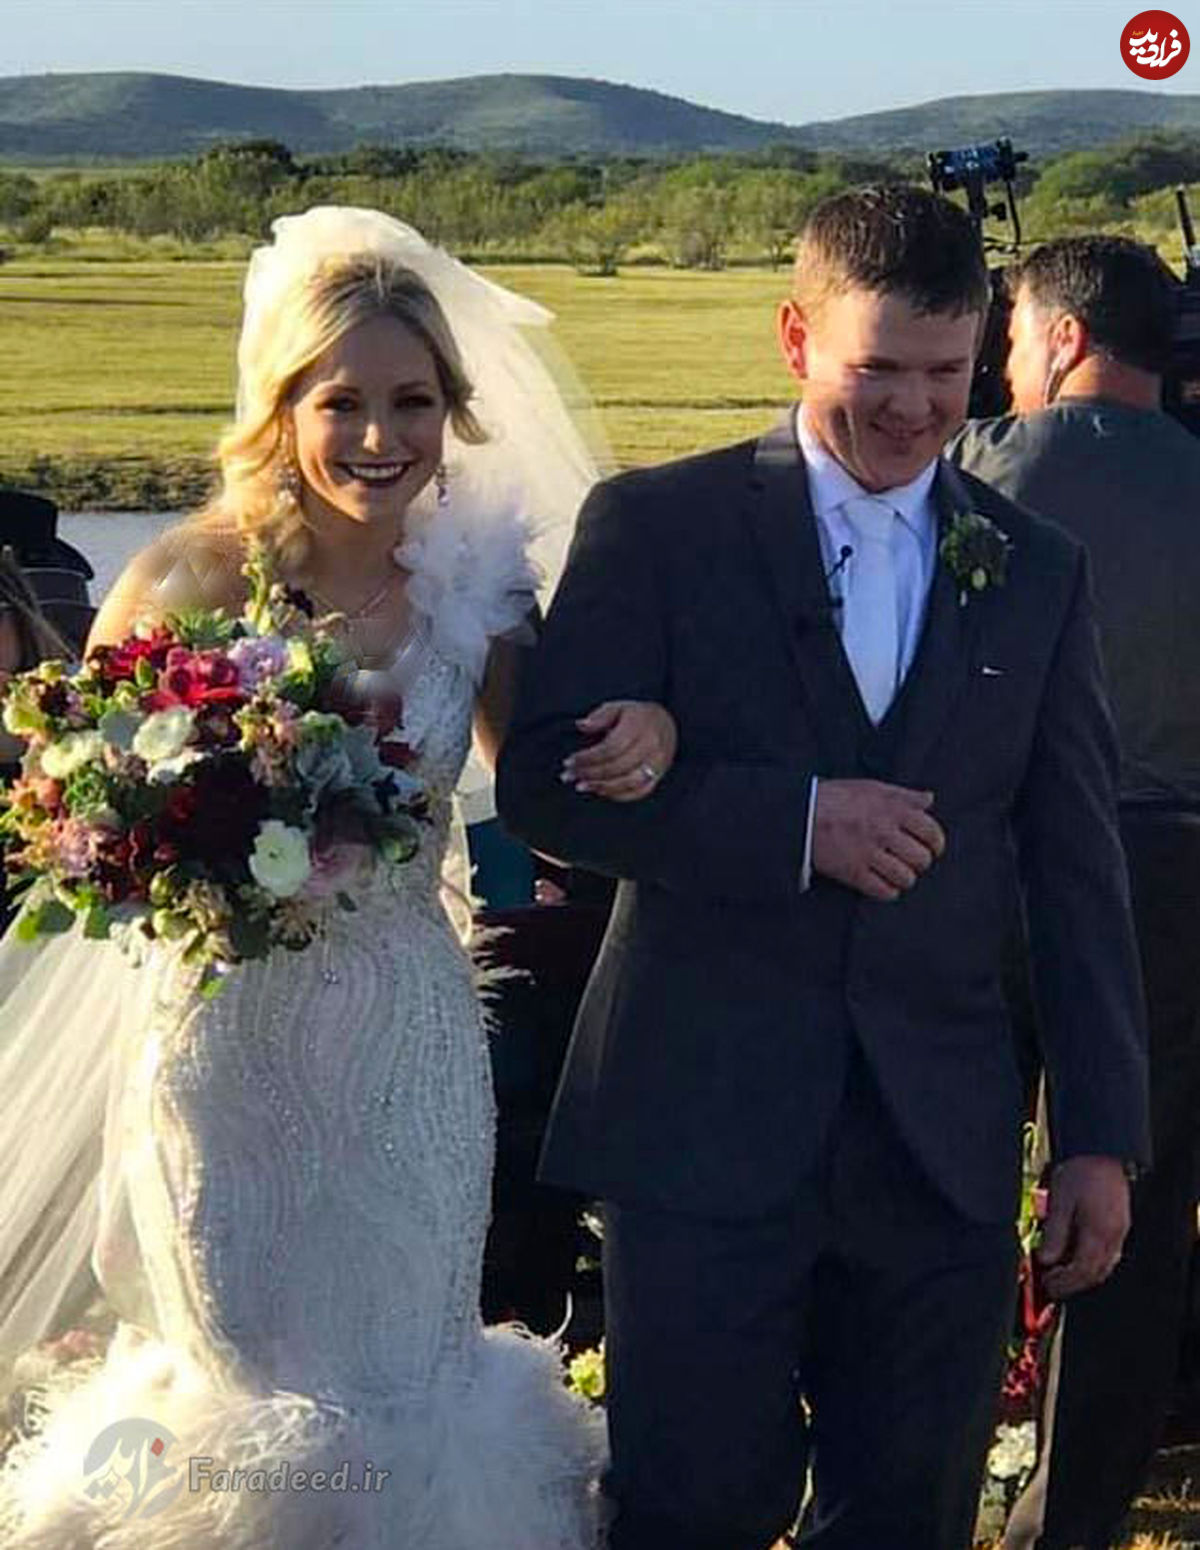 مرگ تراژیک یک زوج چند ساعت بعد از عروسی